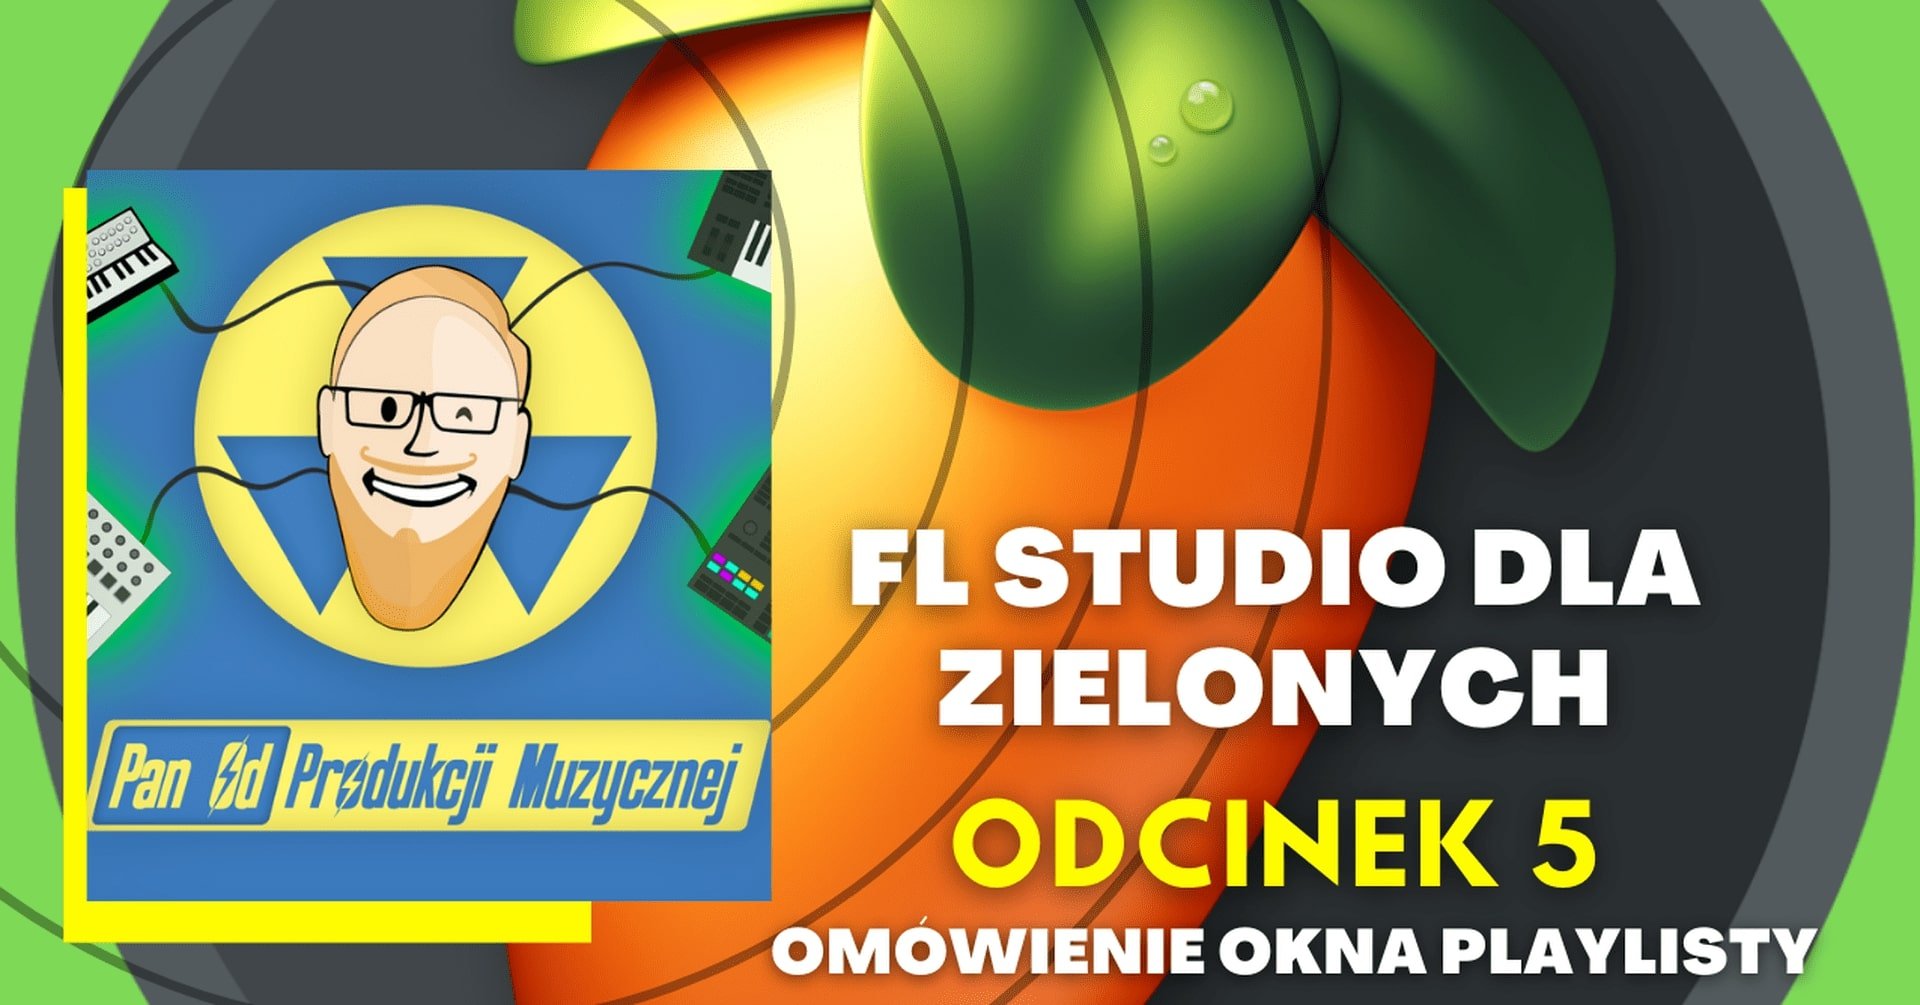 FL STUDIO DLA ZIELONYCH - Omówienie okna playlisty (odc. 5)